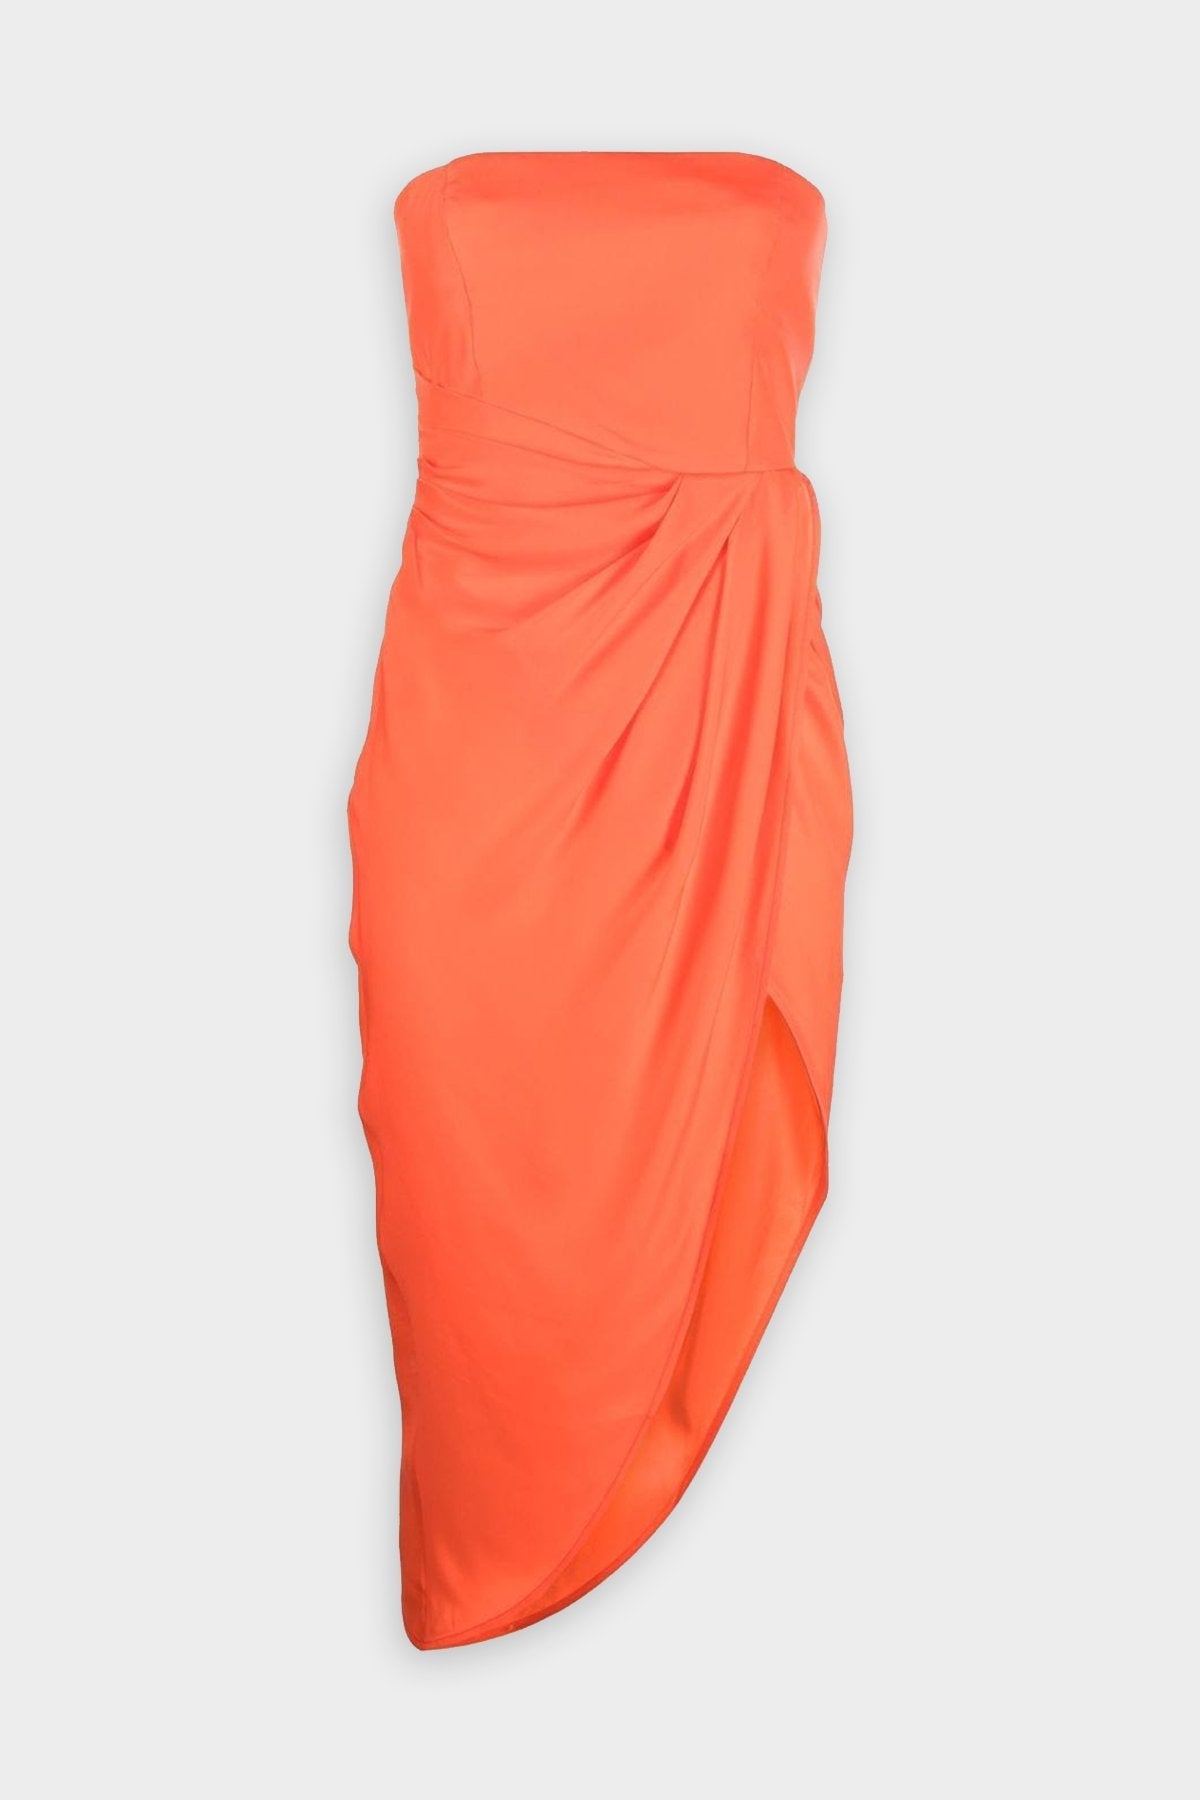 Lica Silk Short Dress in Coral - shop-olivia.com